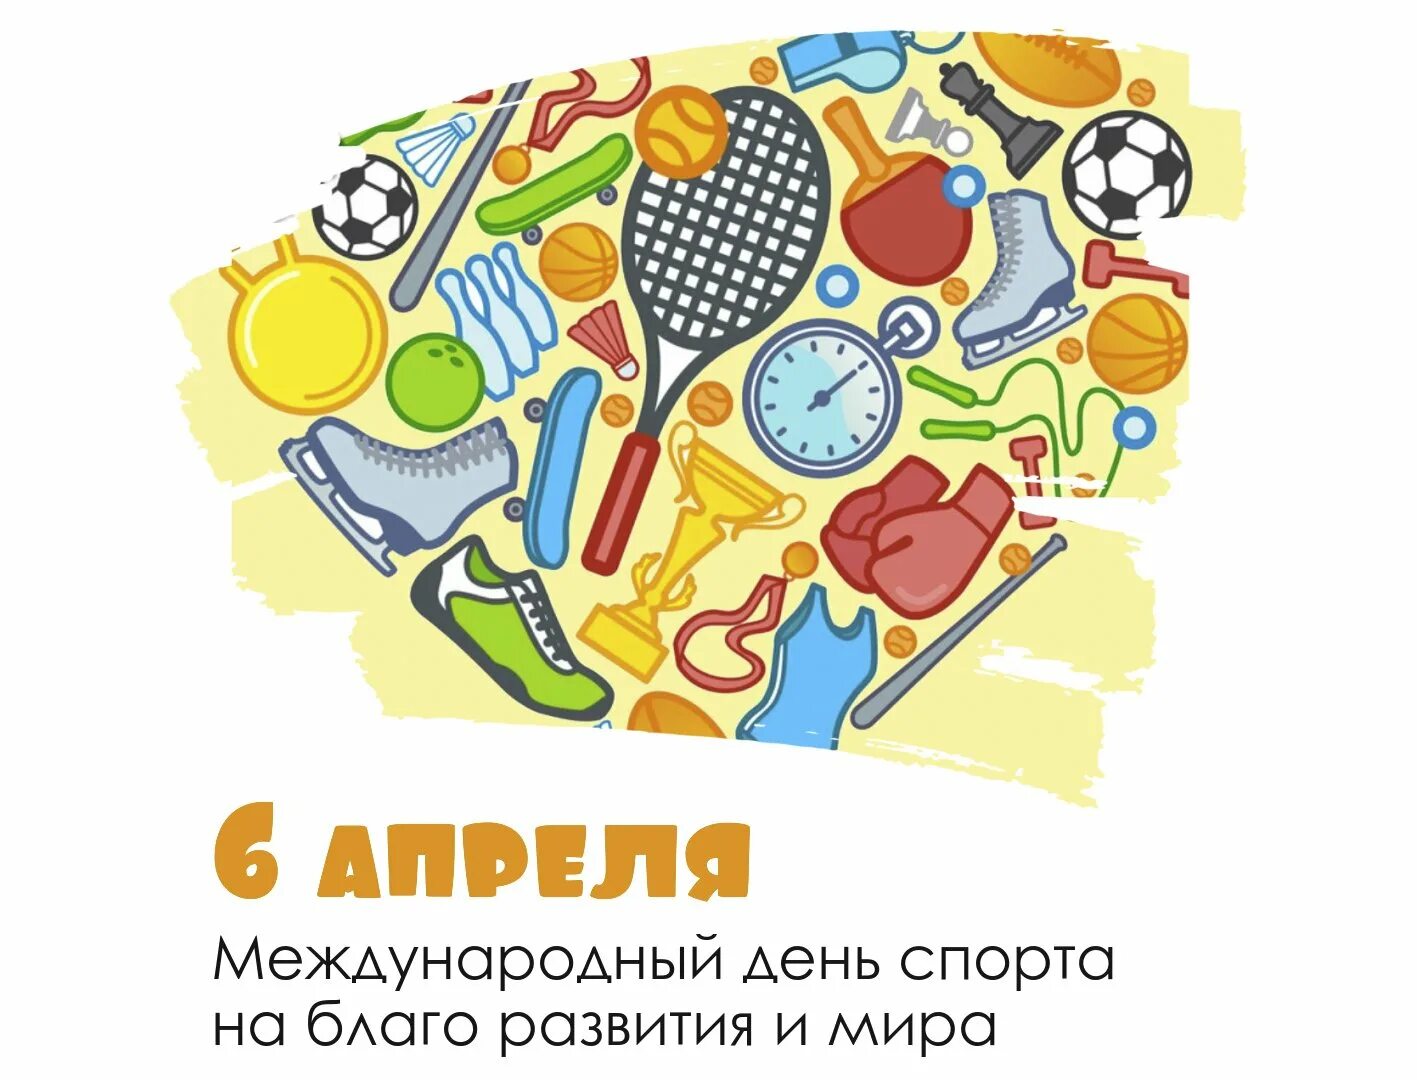 6 апреля есть праздник. Всемирный день спорта. 6 Апреля Международный день спорта.